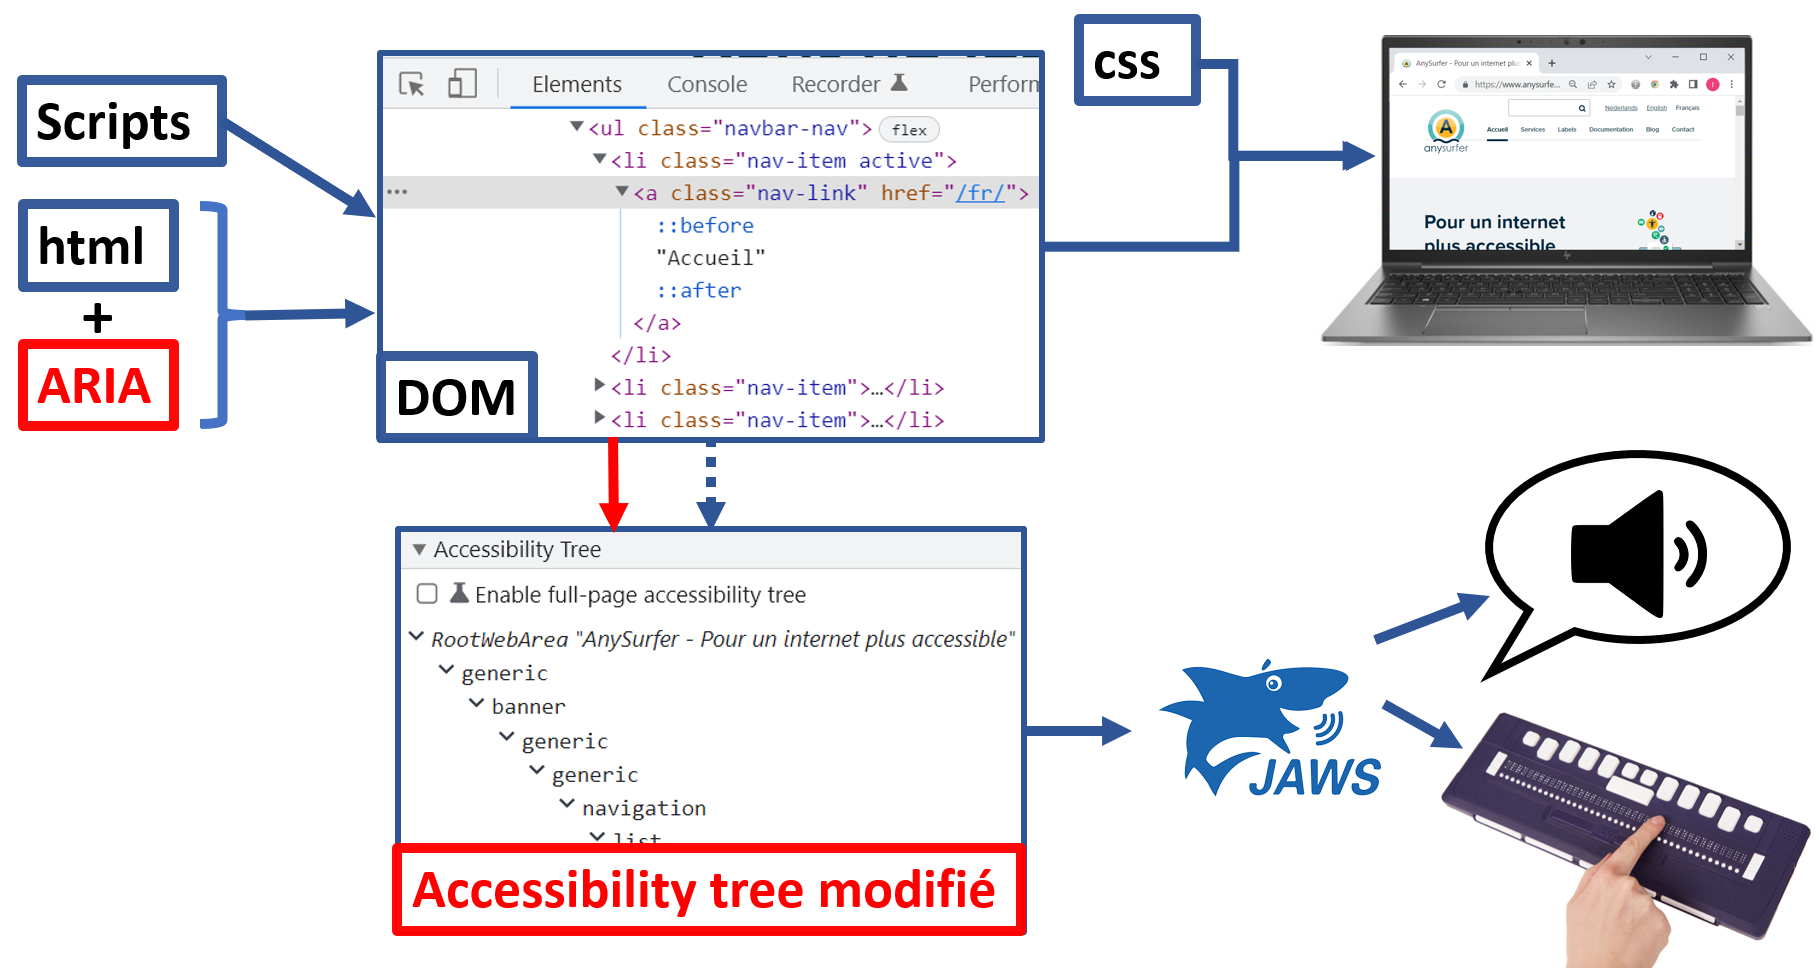 ARIA ajouté dans le code source vient compléter l'accessibility tree 